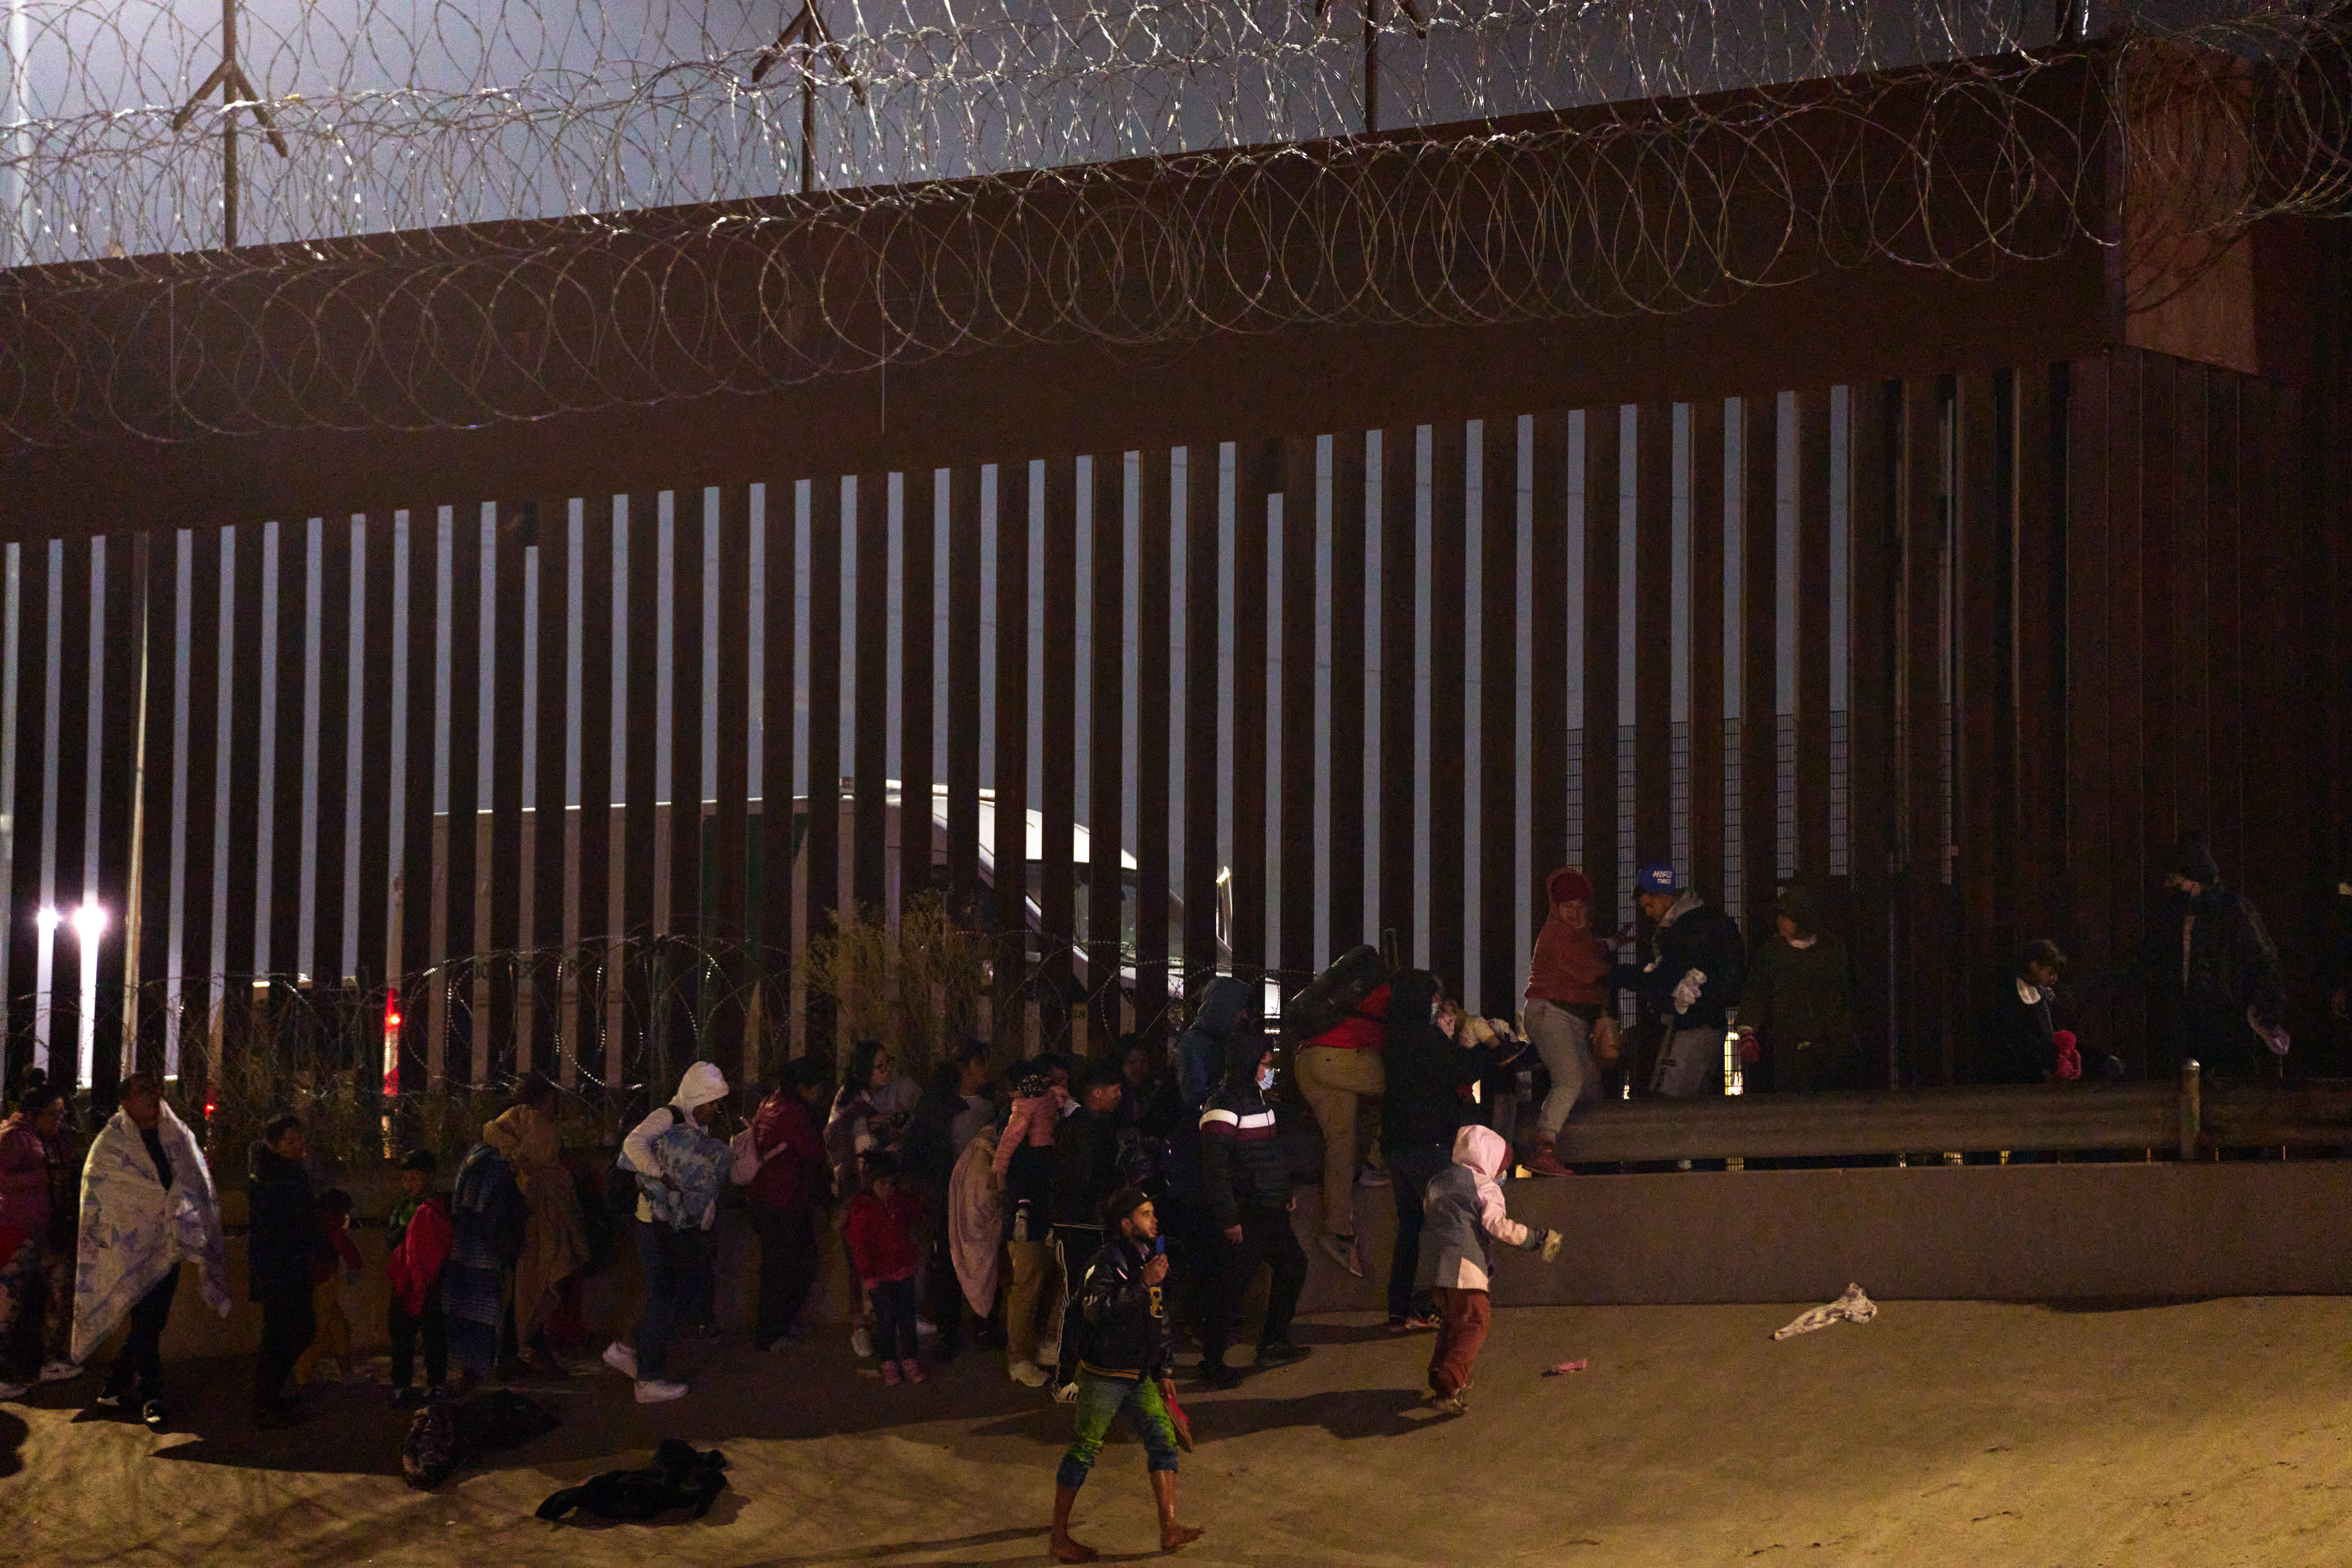 Migrants cross U.S.-Mexico border